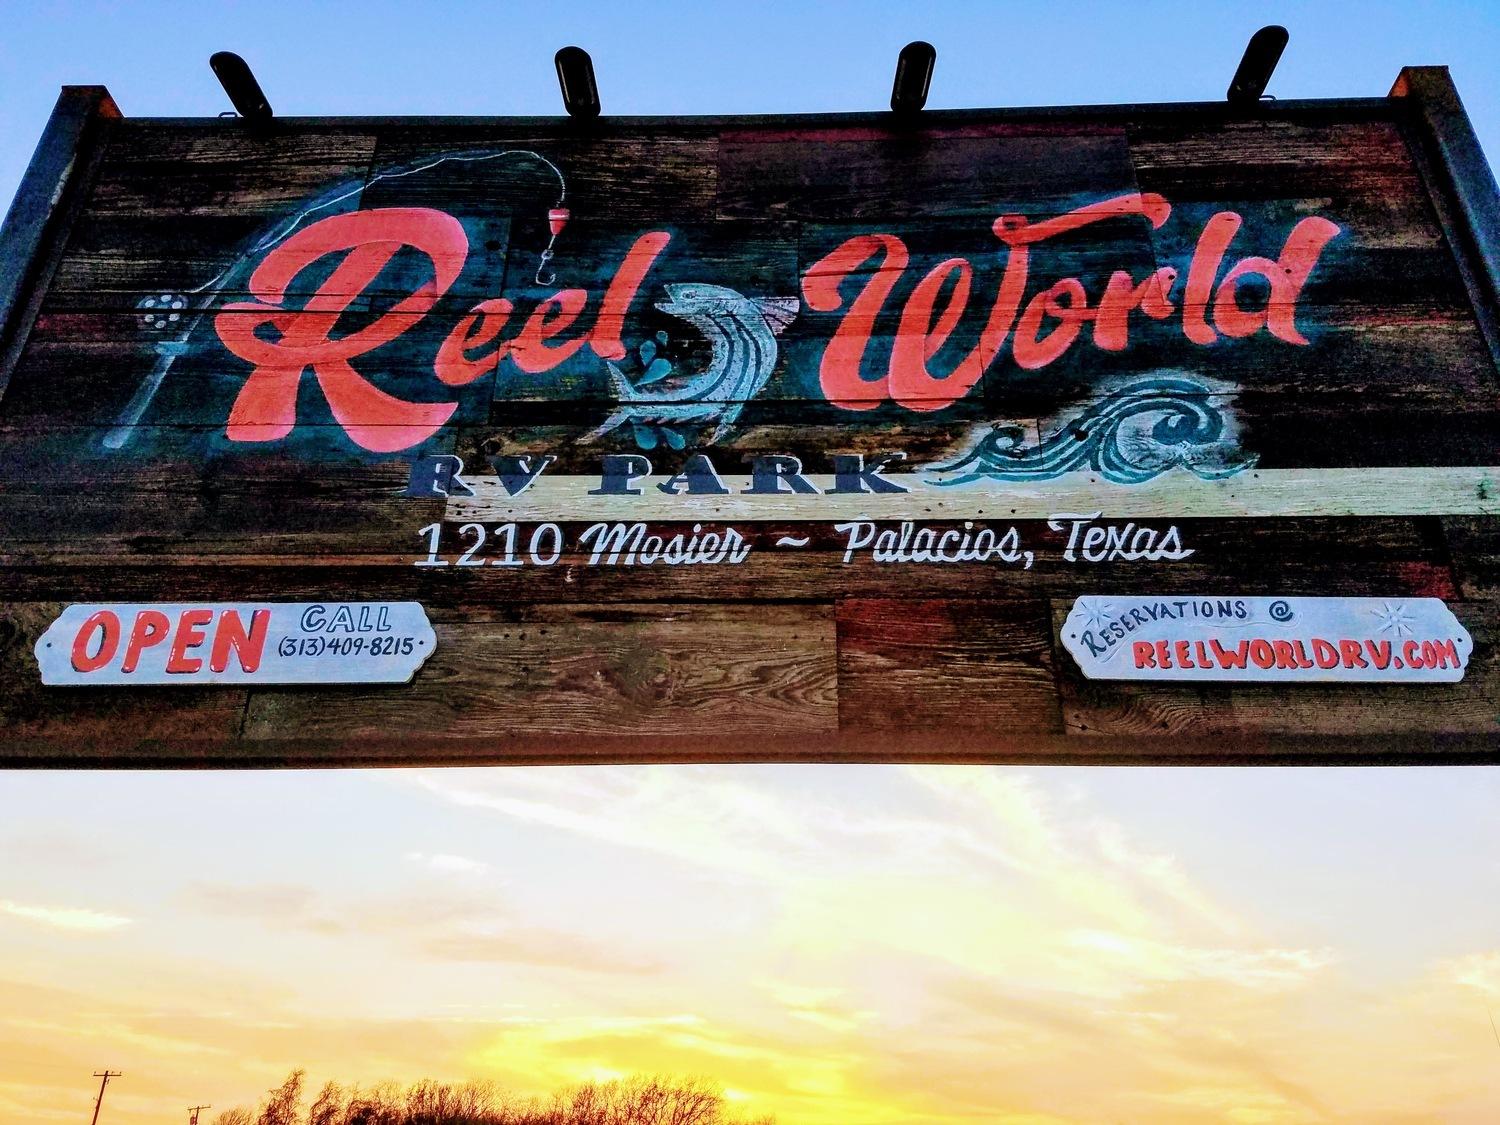 Reel World RV Park